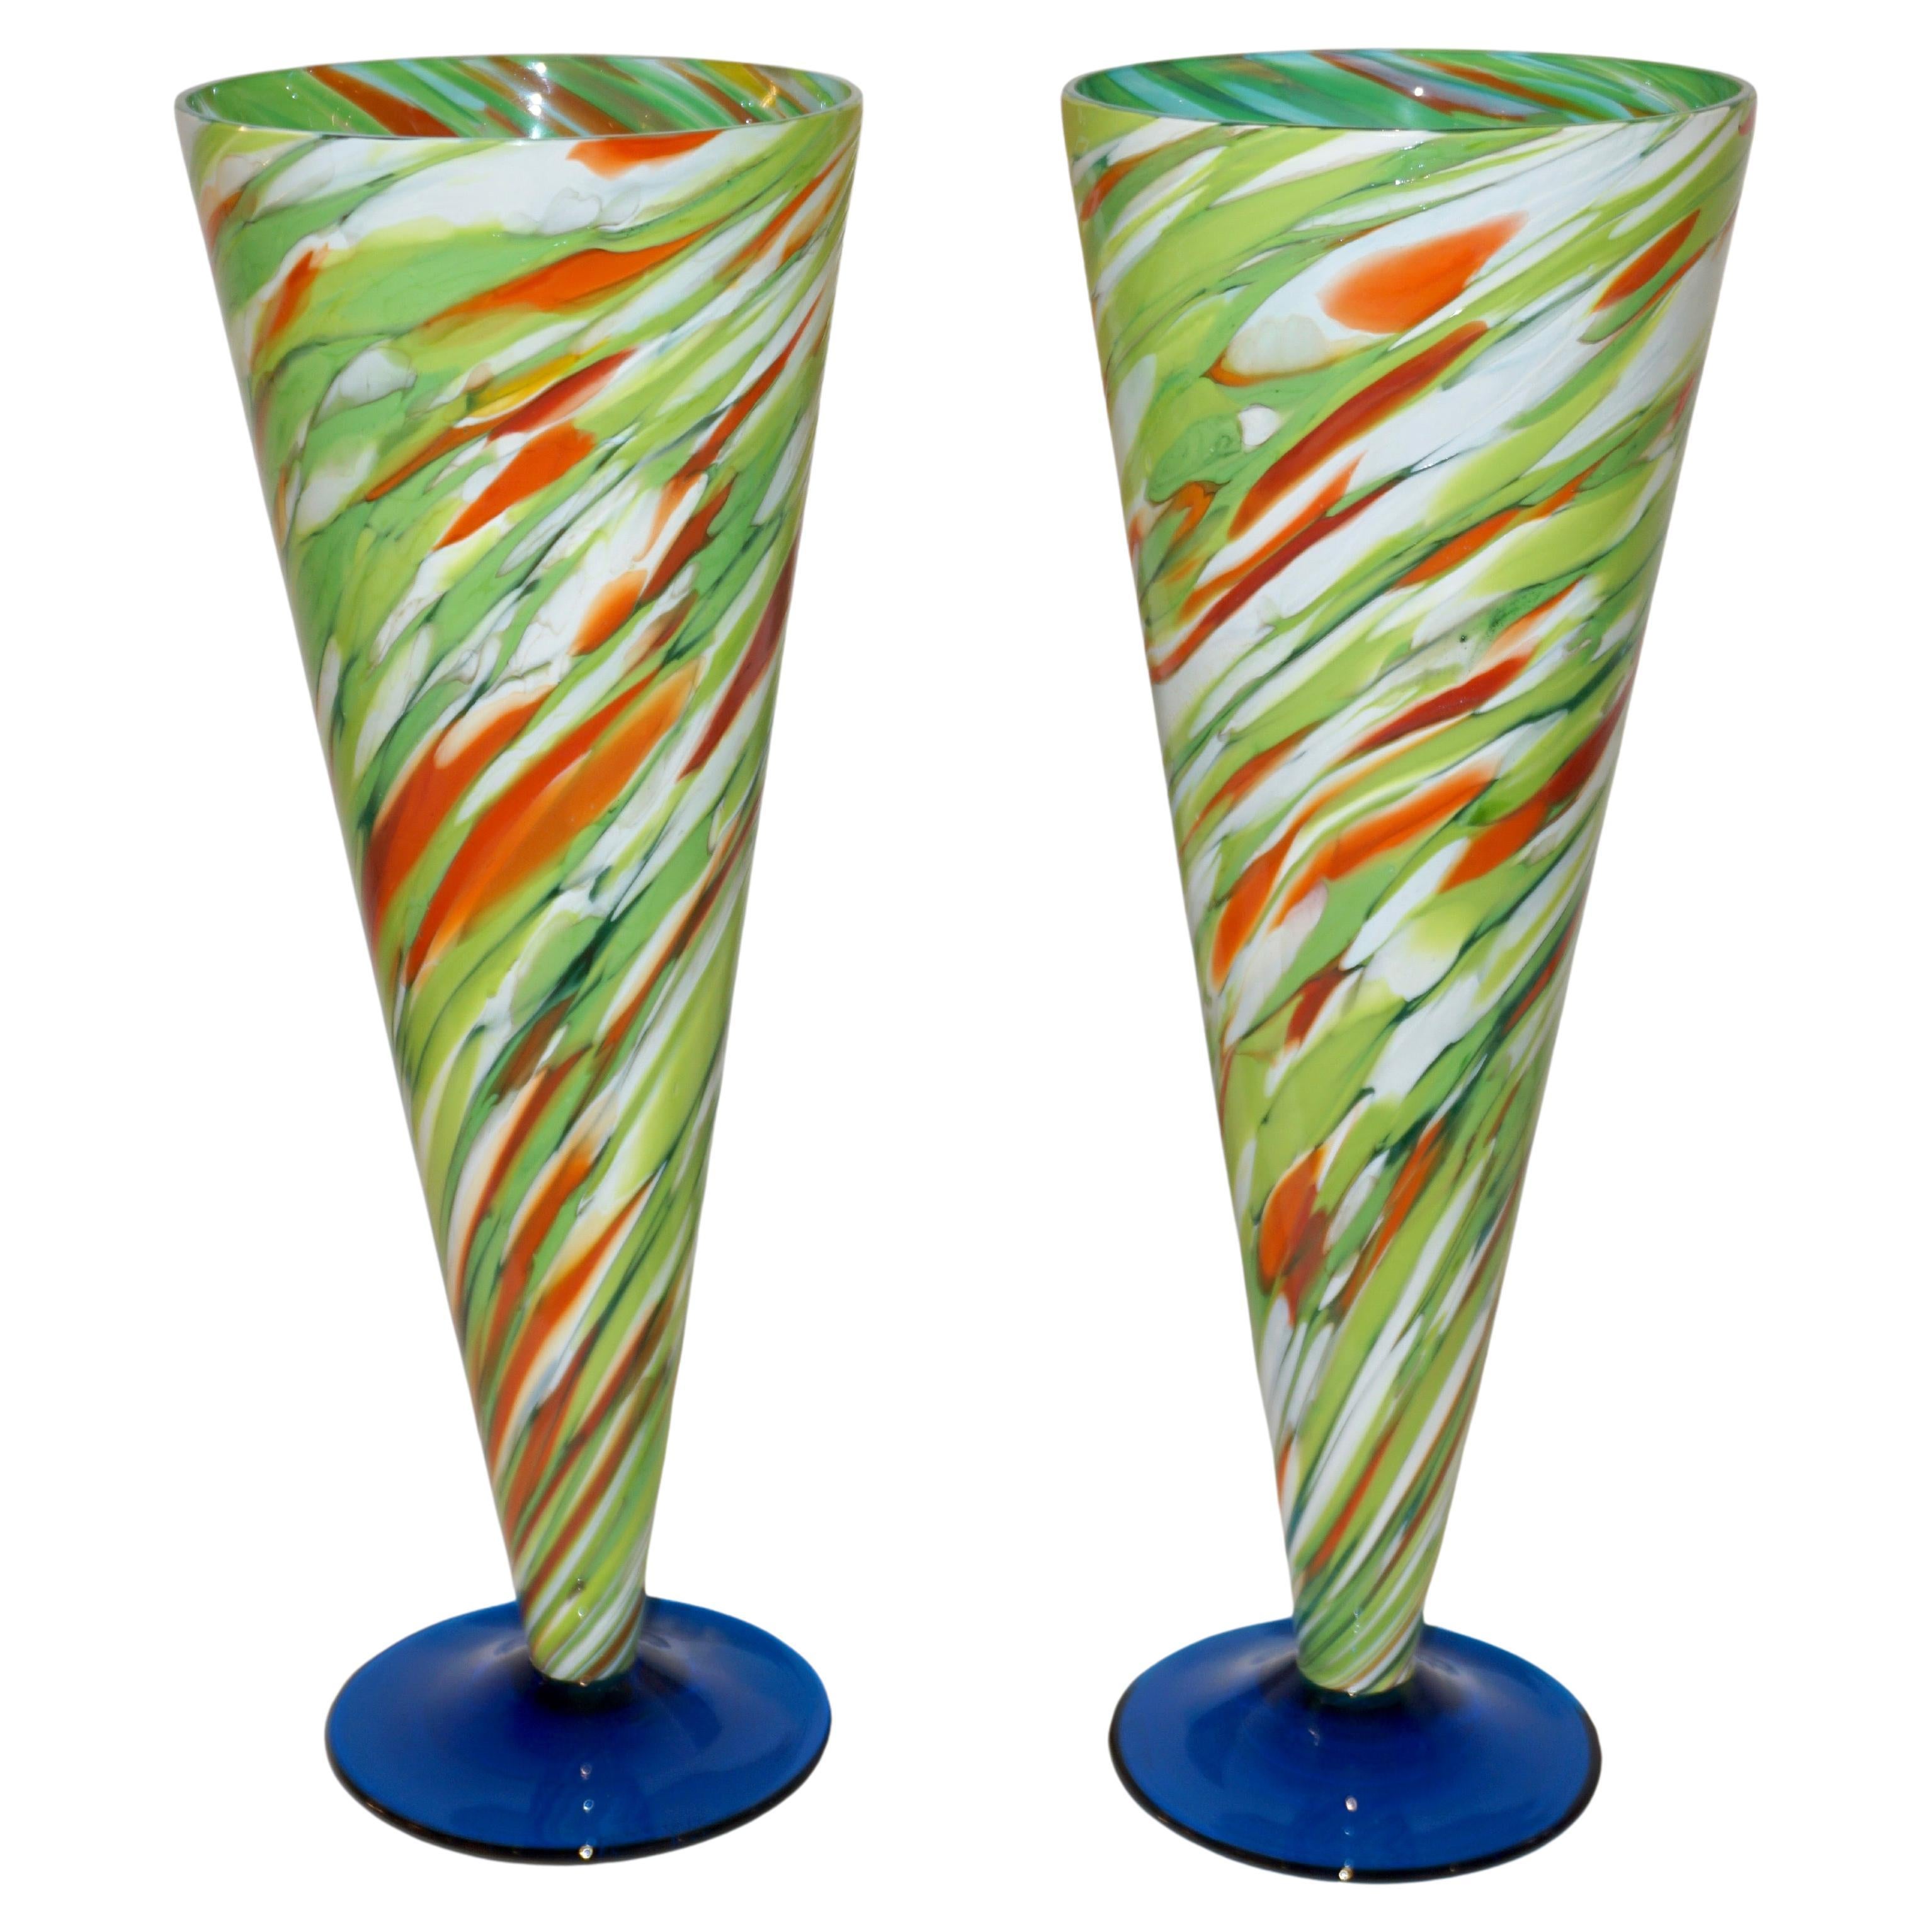 Paar konische Vasen aus weißem, grünem und orangefarbenem Muranoglas auf blauem Sockel, 1970, vonnedese